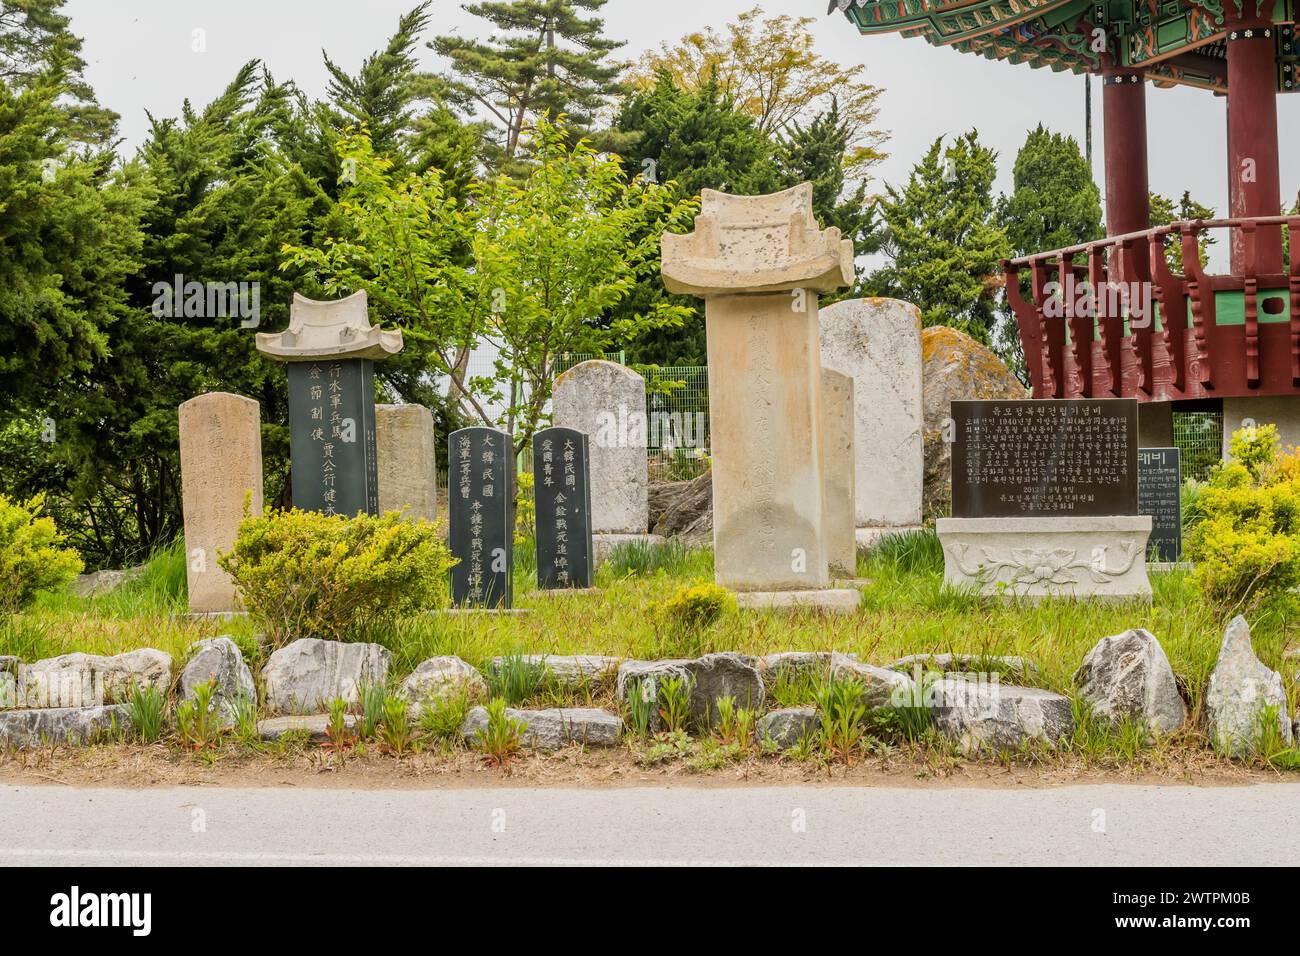 Alte Grabsteine in einer ruhigen Umgebung mit traditioneller asiatischer Architektur in Sinjin-Do, Südkorea Stockfoto